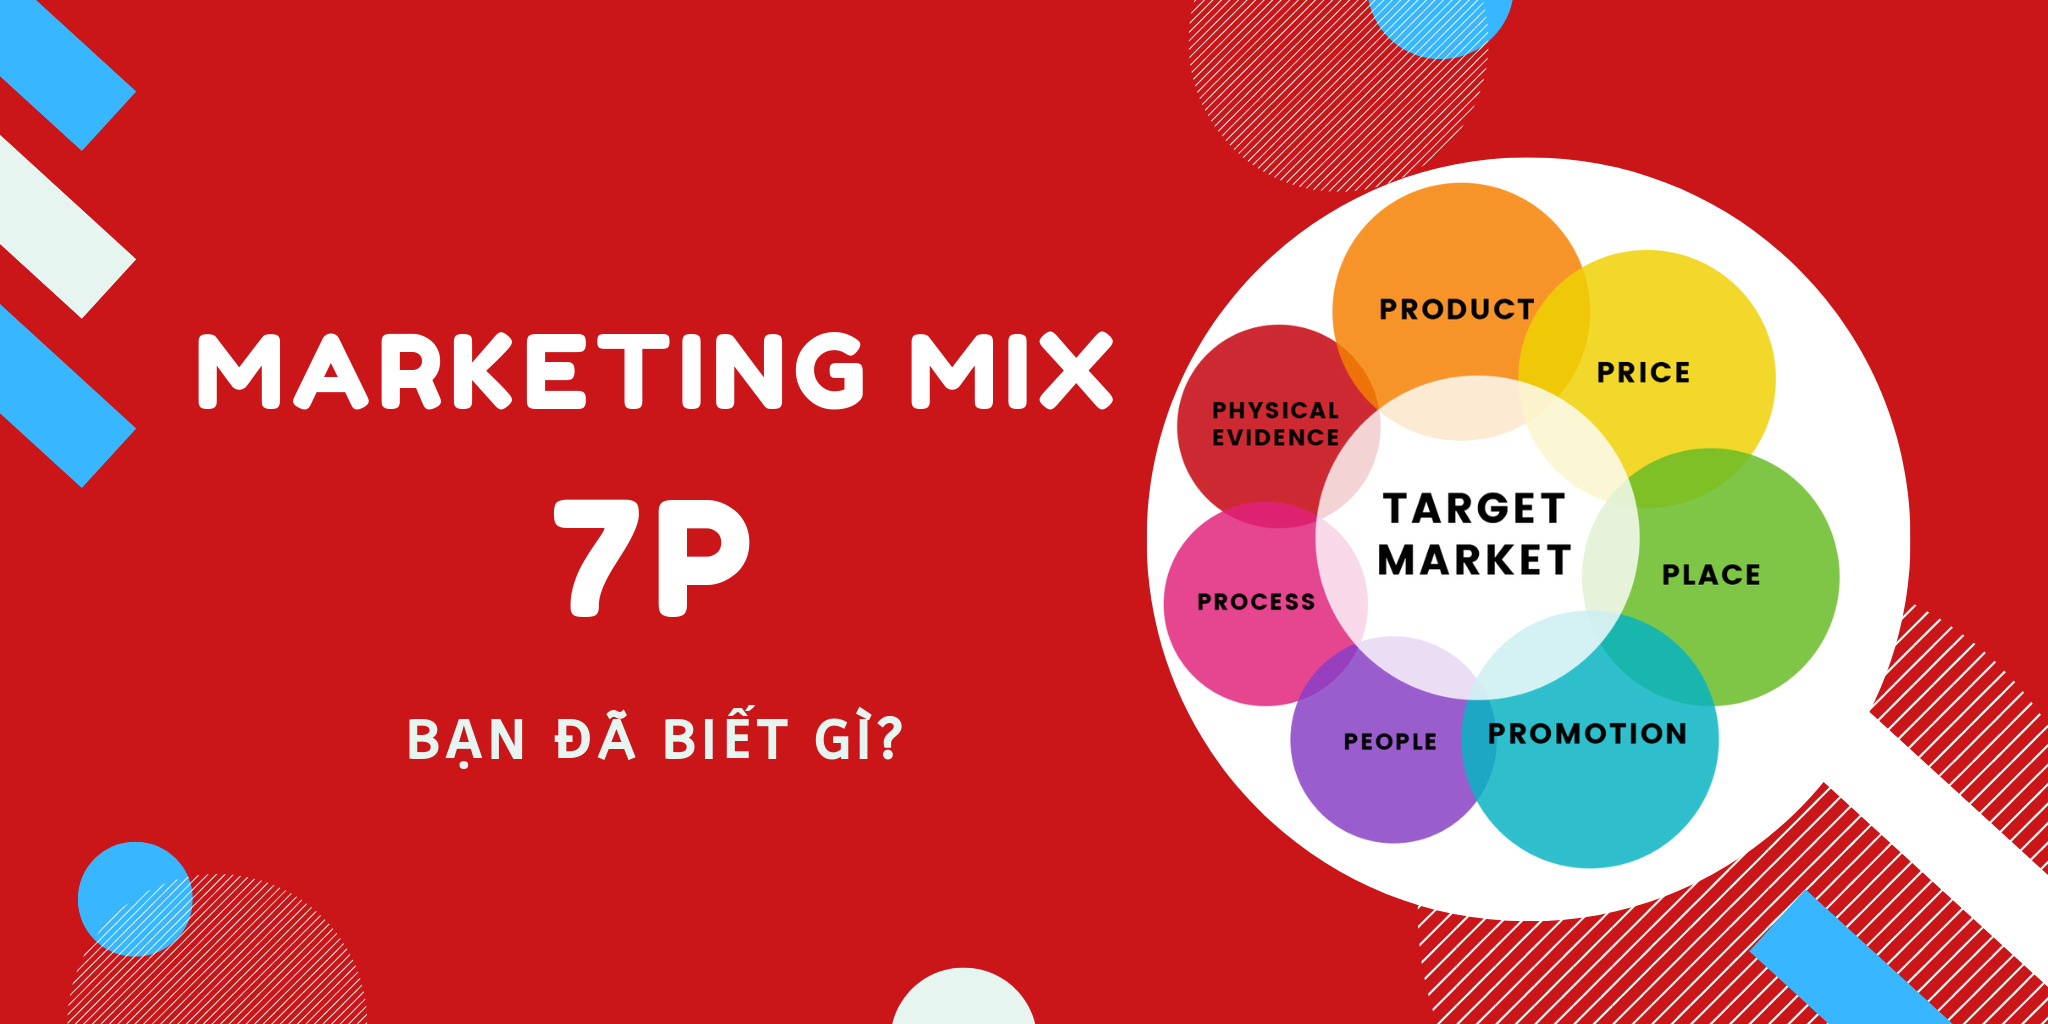 Marketing Mix là gì? Định nghĩa Marketing Mix, Ý nghĩa Marketing Mix￼